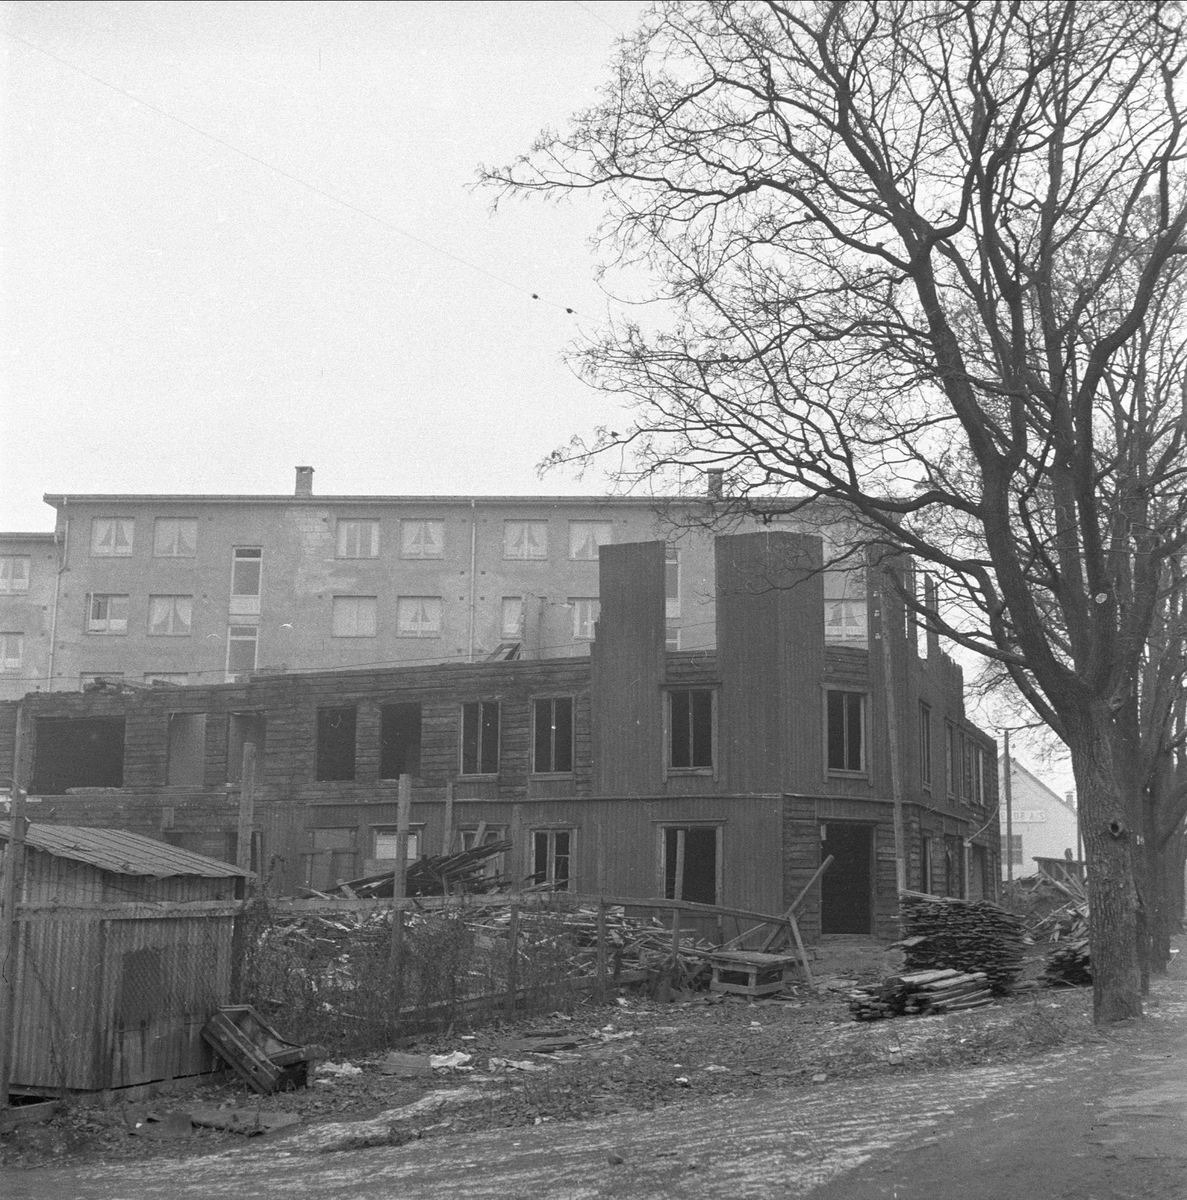 Sandaker, Oslo, 17.11.1956. Regulering. Boligblokker og hus under riving.